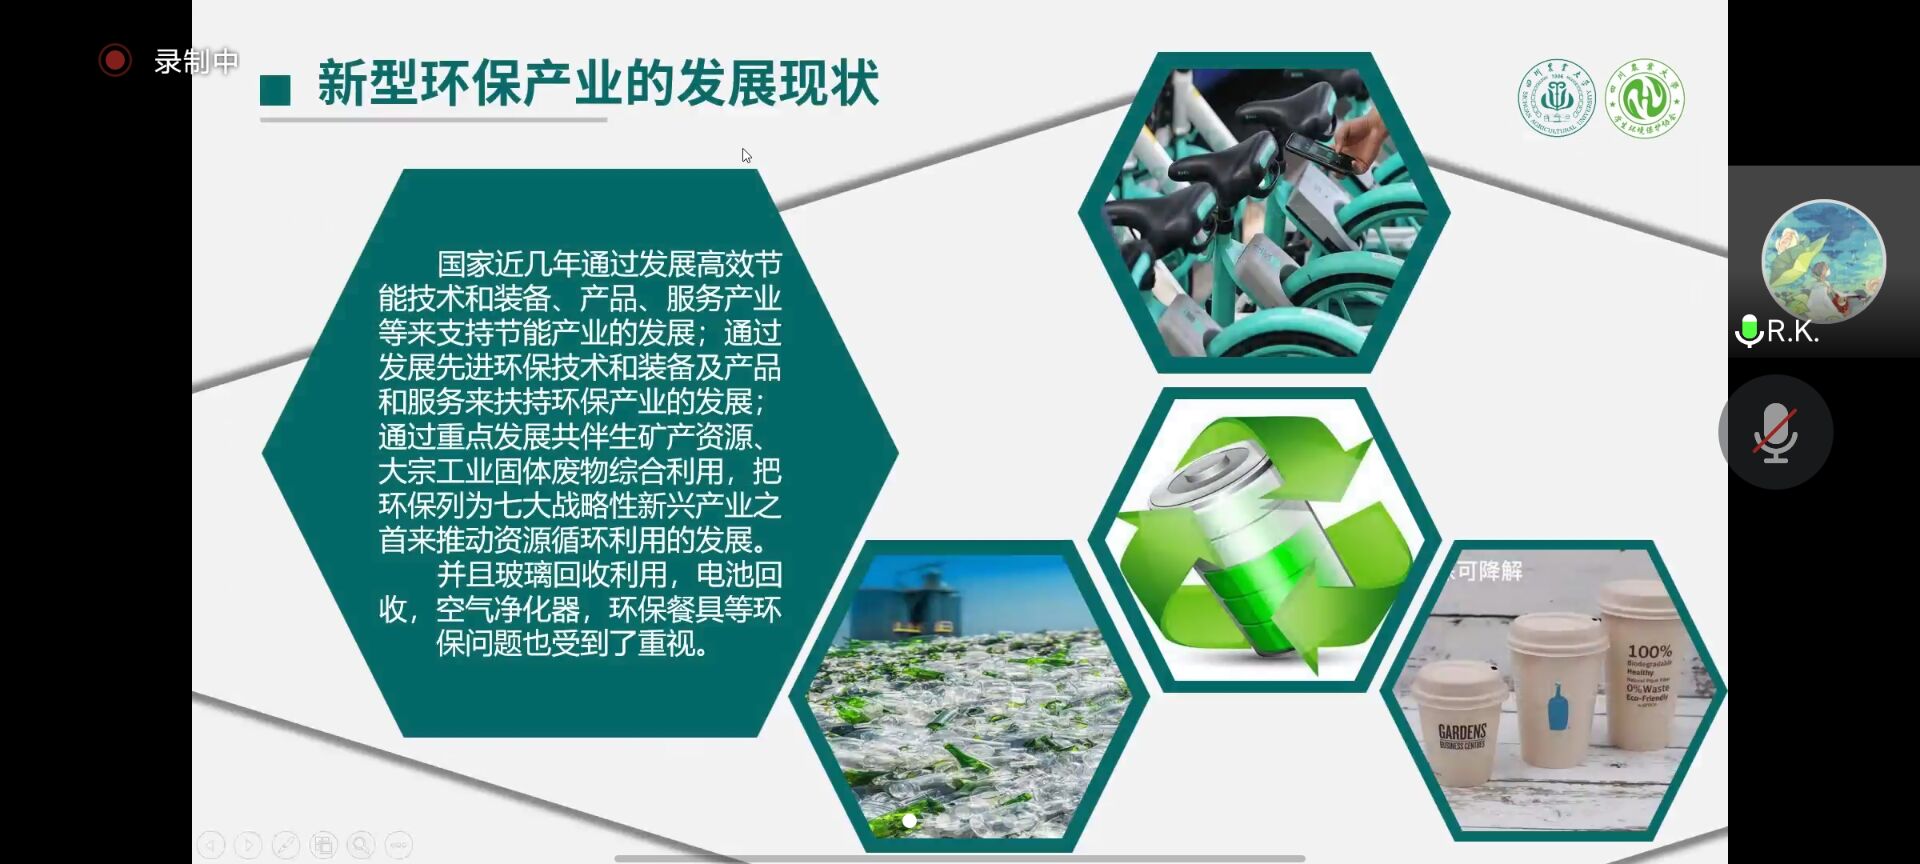 图为刘青婷同学介绍新型环保产业的发展现状。环保协会 供图